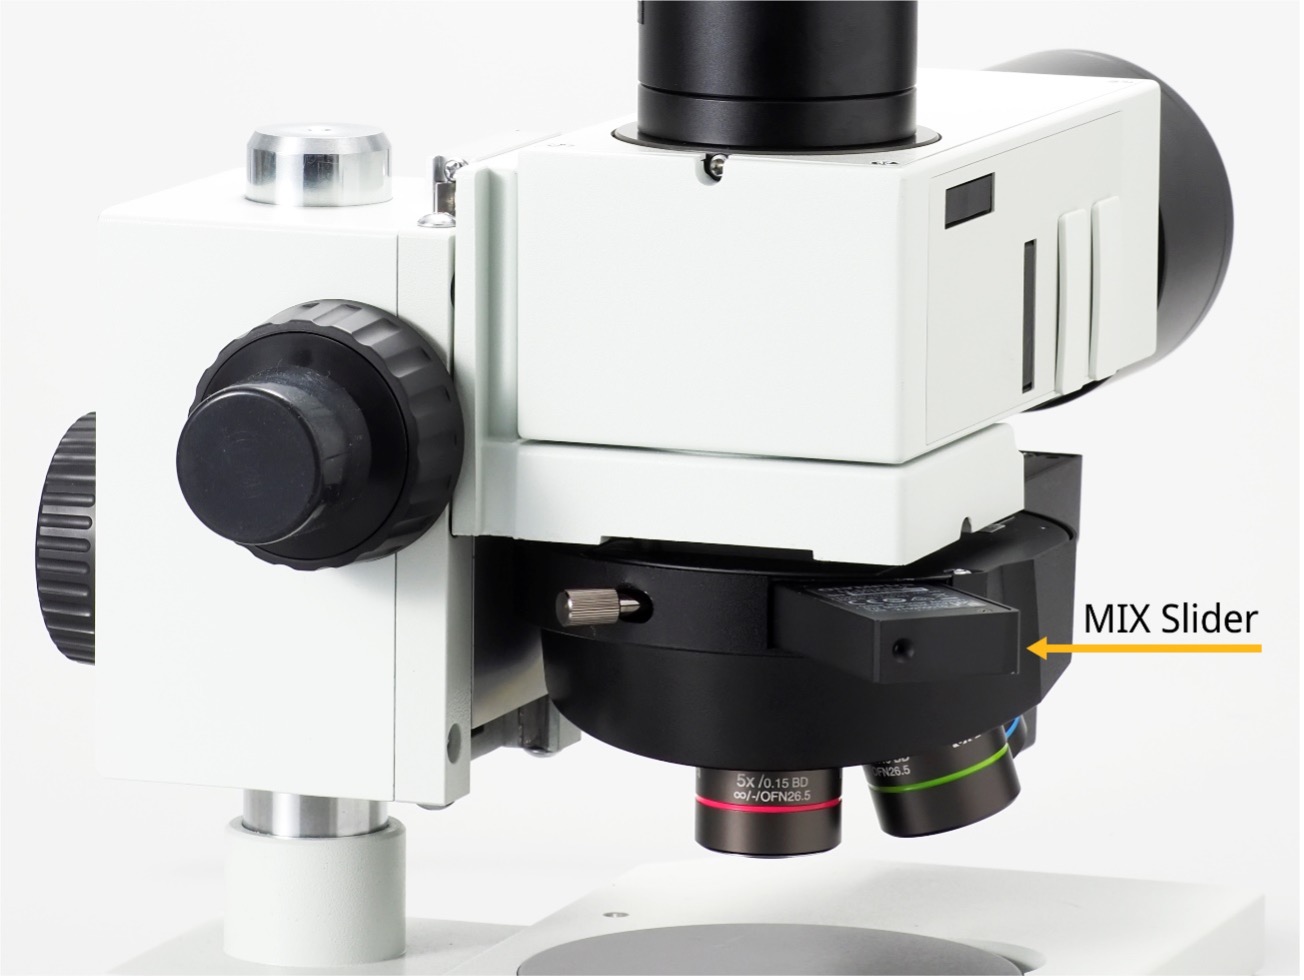 Kompaktní mikroskop vybaven technologií MIX